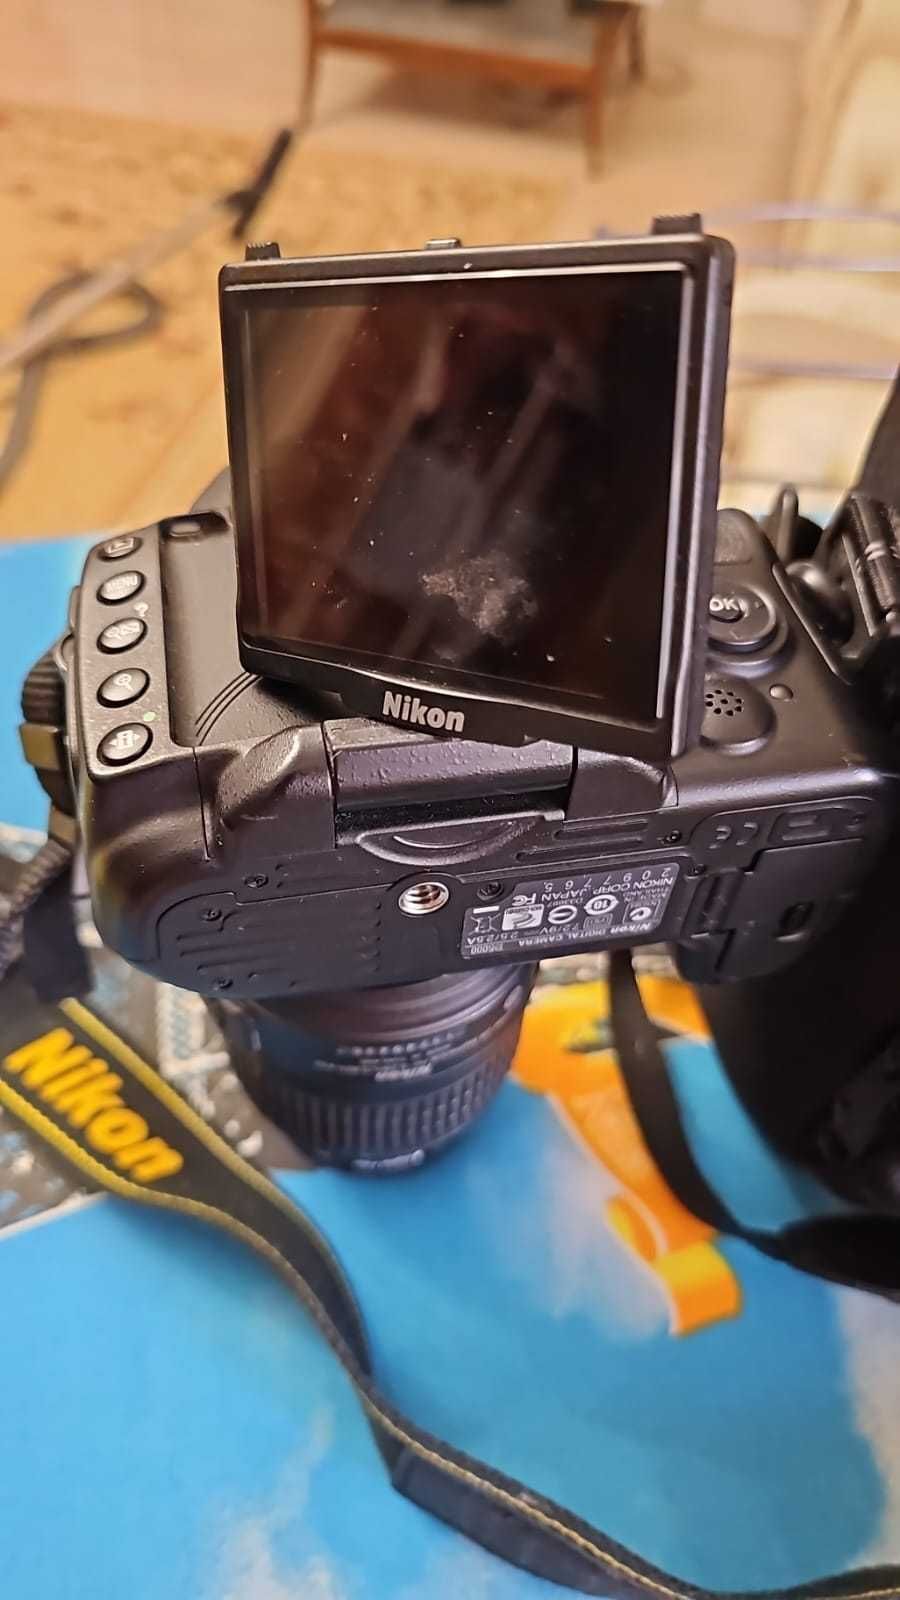 продам новый фото аппарат Nikon DX